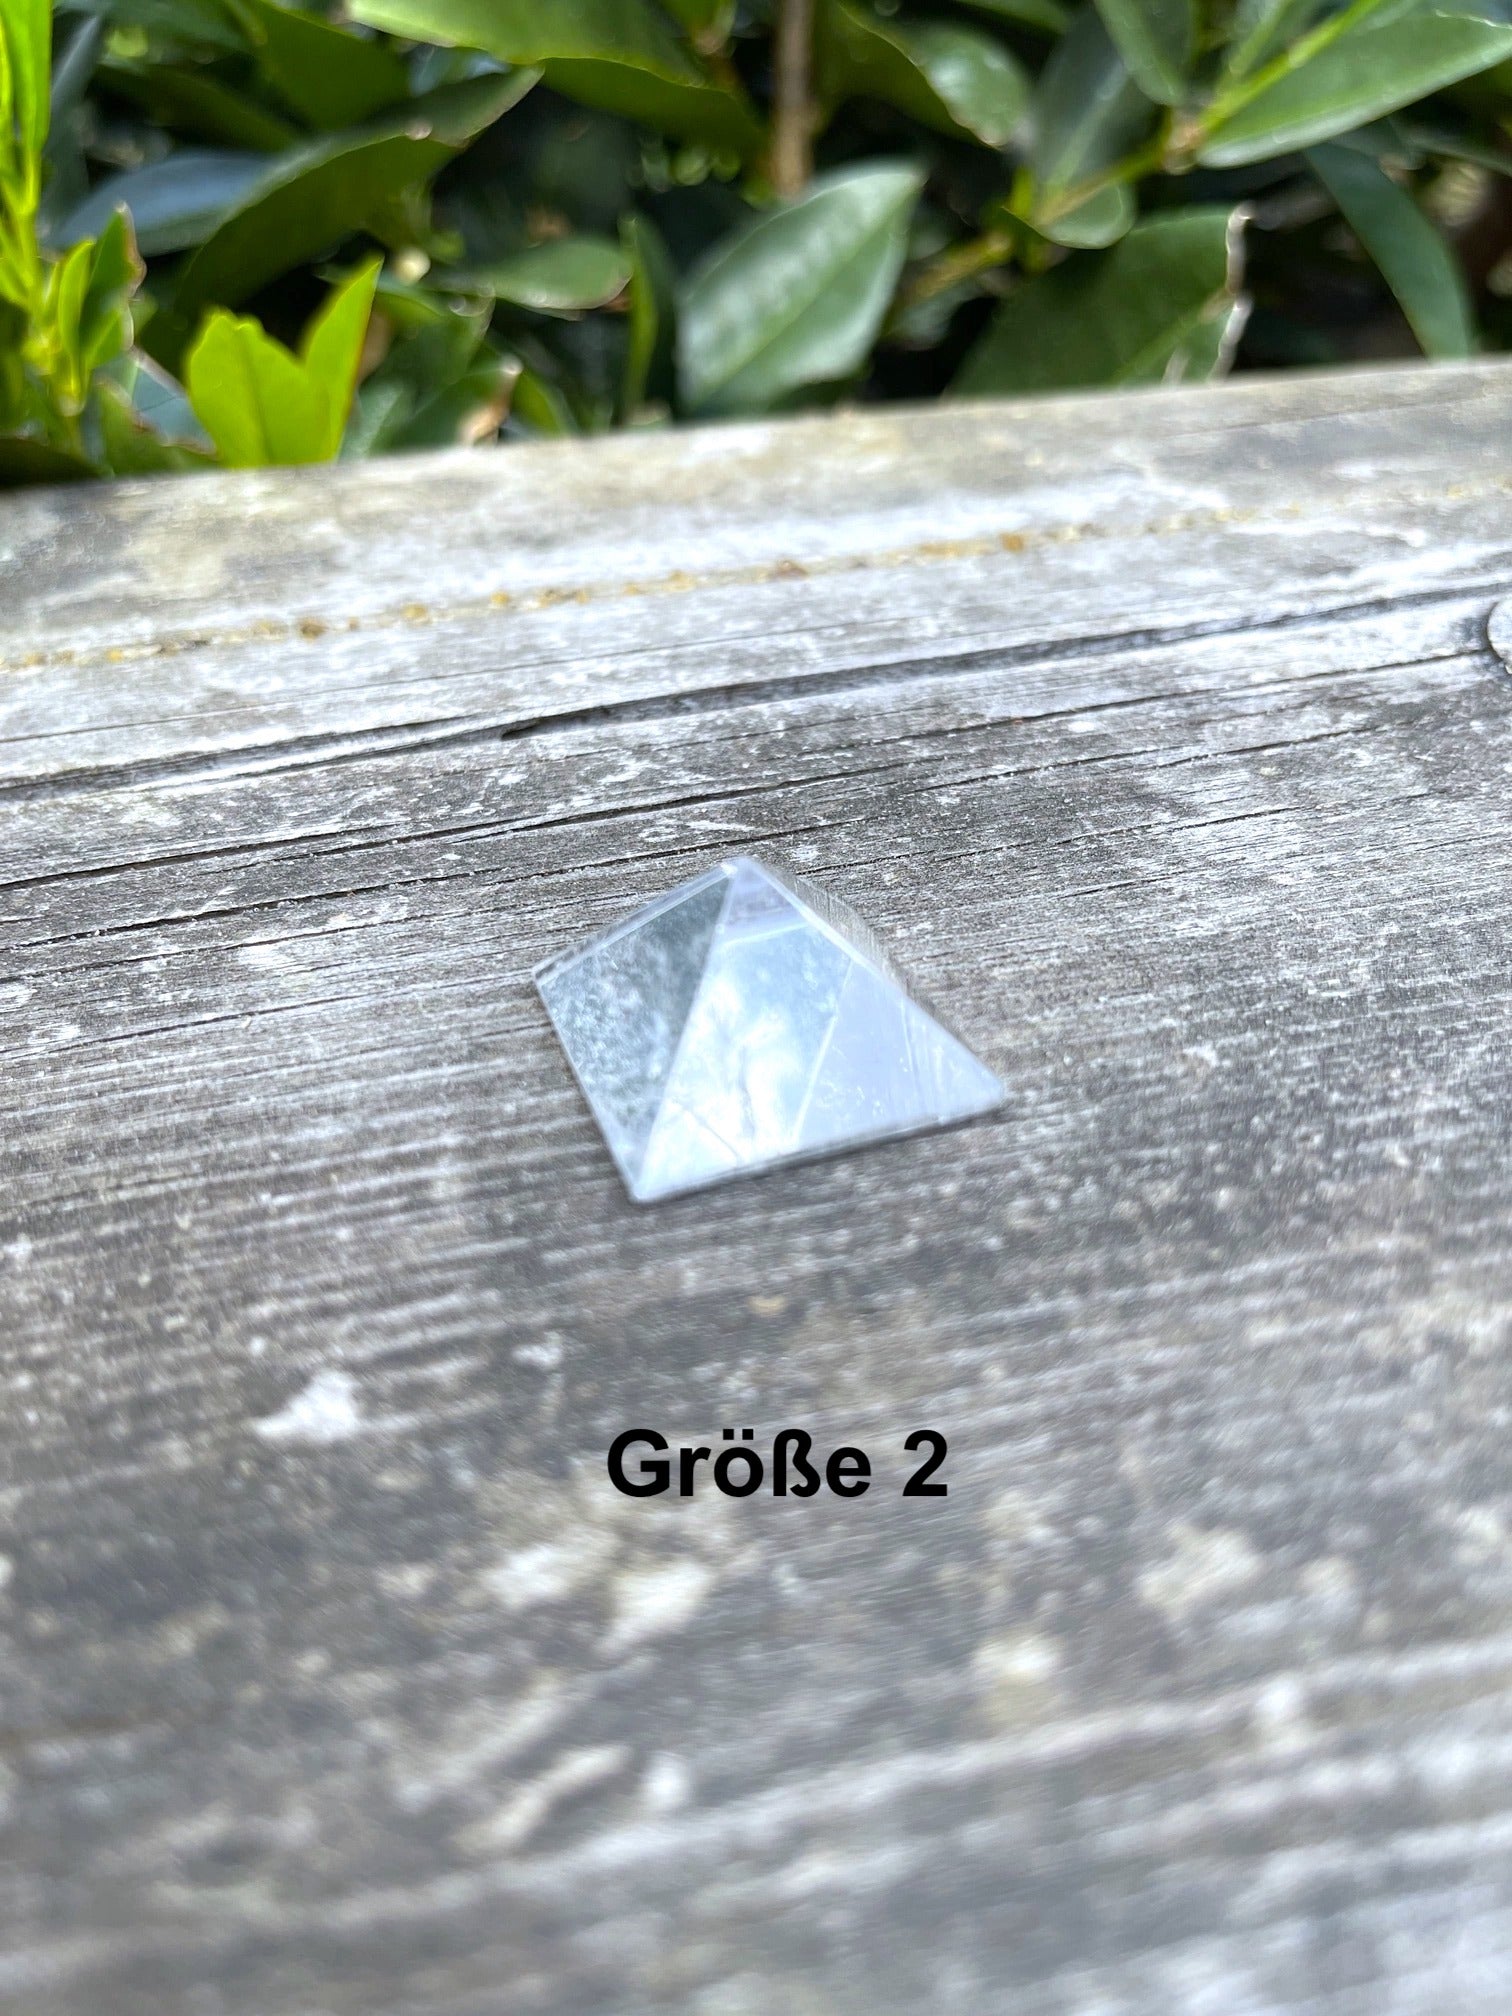 Bergkristall Pyramide (AAA-Qualität)